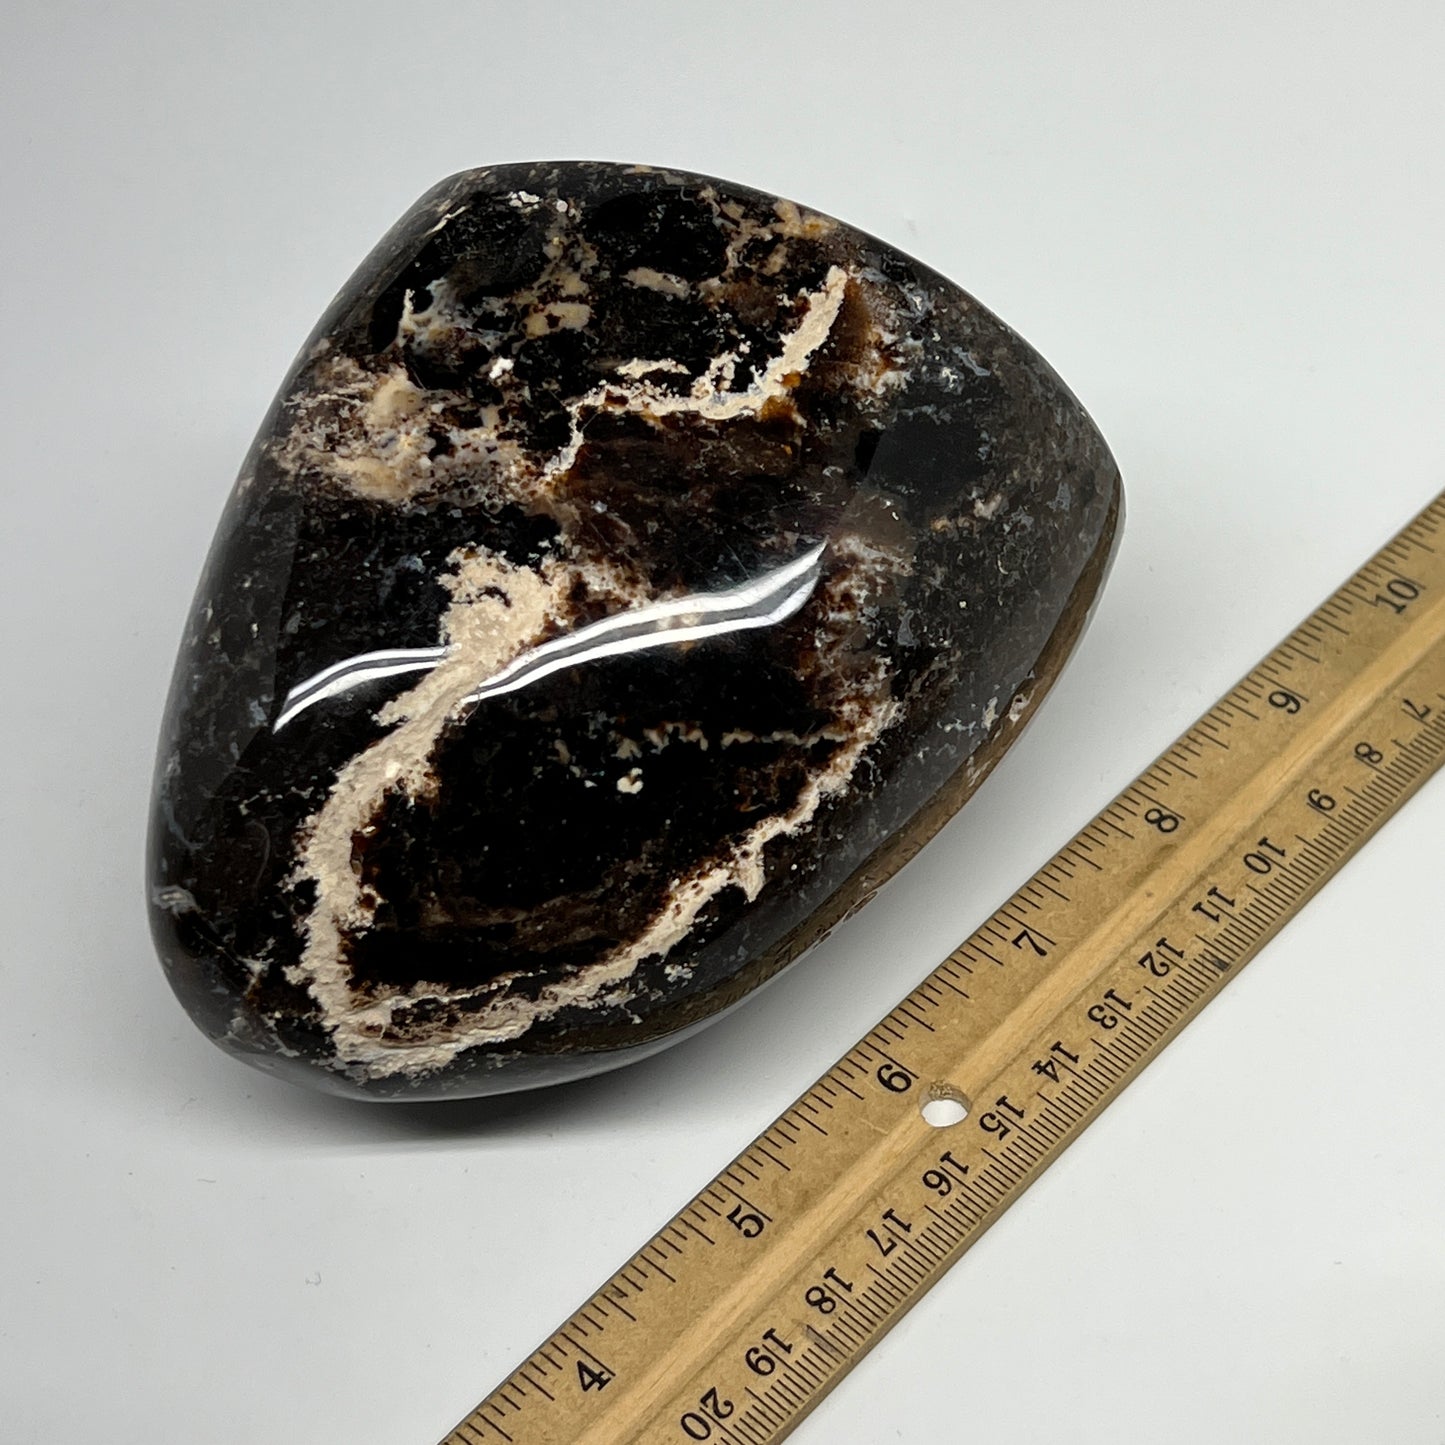 825g,4.2"x3.8"x3" Black Opal Freeform Polished Gemstone @Madagascar,B21048